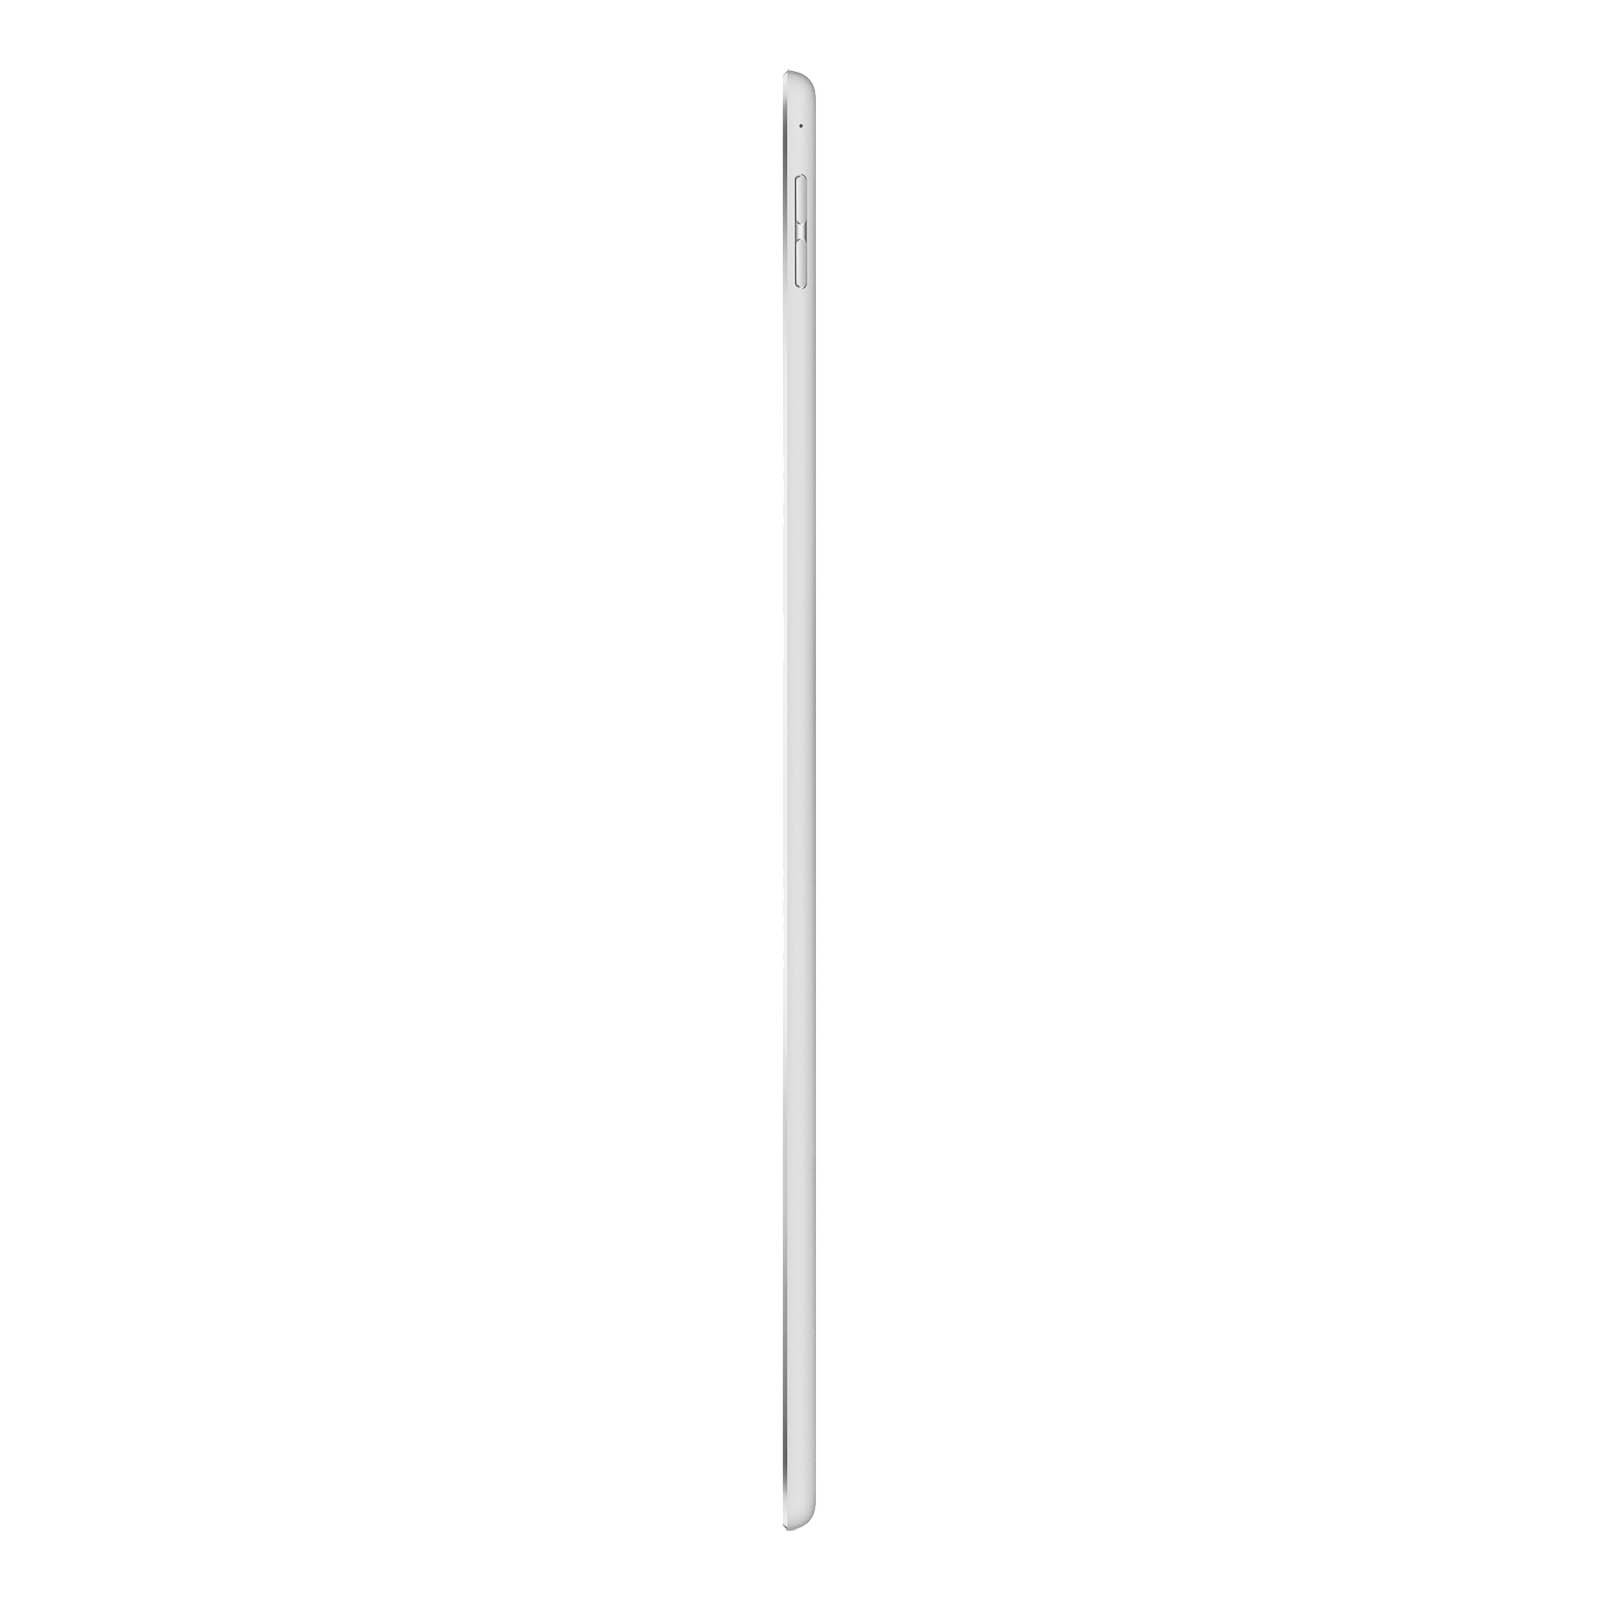 iPad Pro 12.9 Inch 3rd Gen 1TB Silver Pristine - WiFi